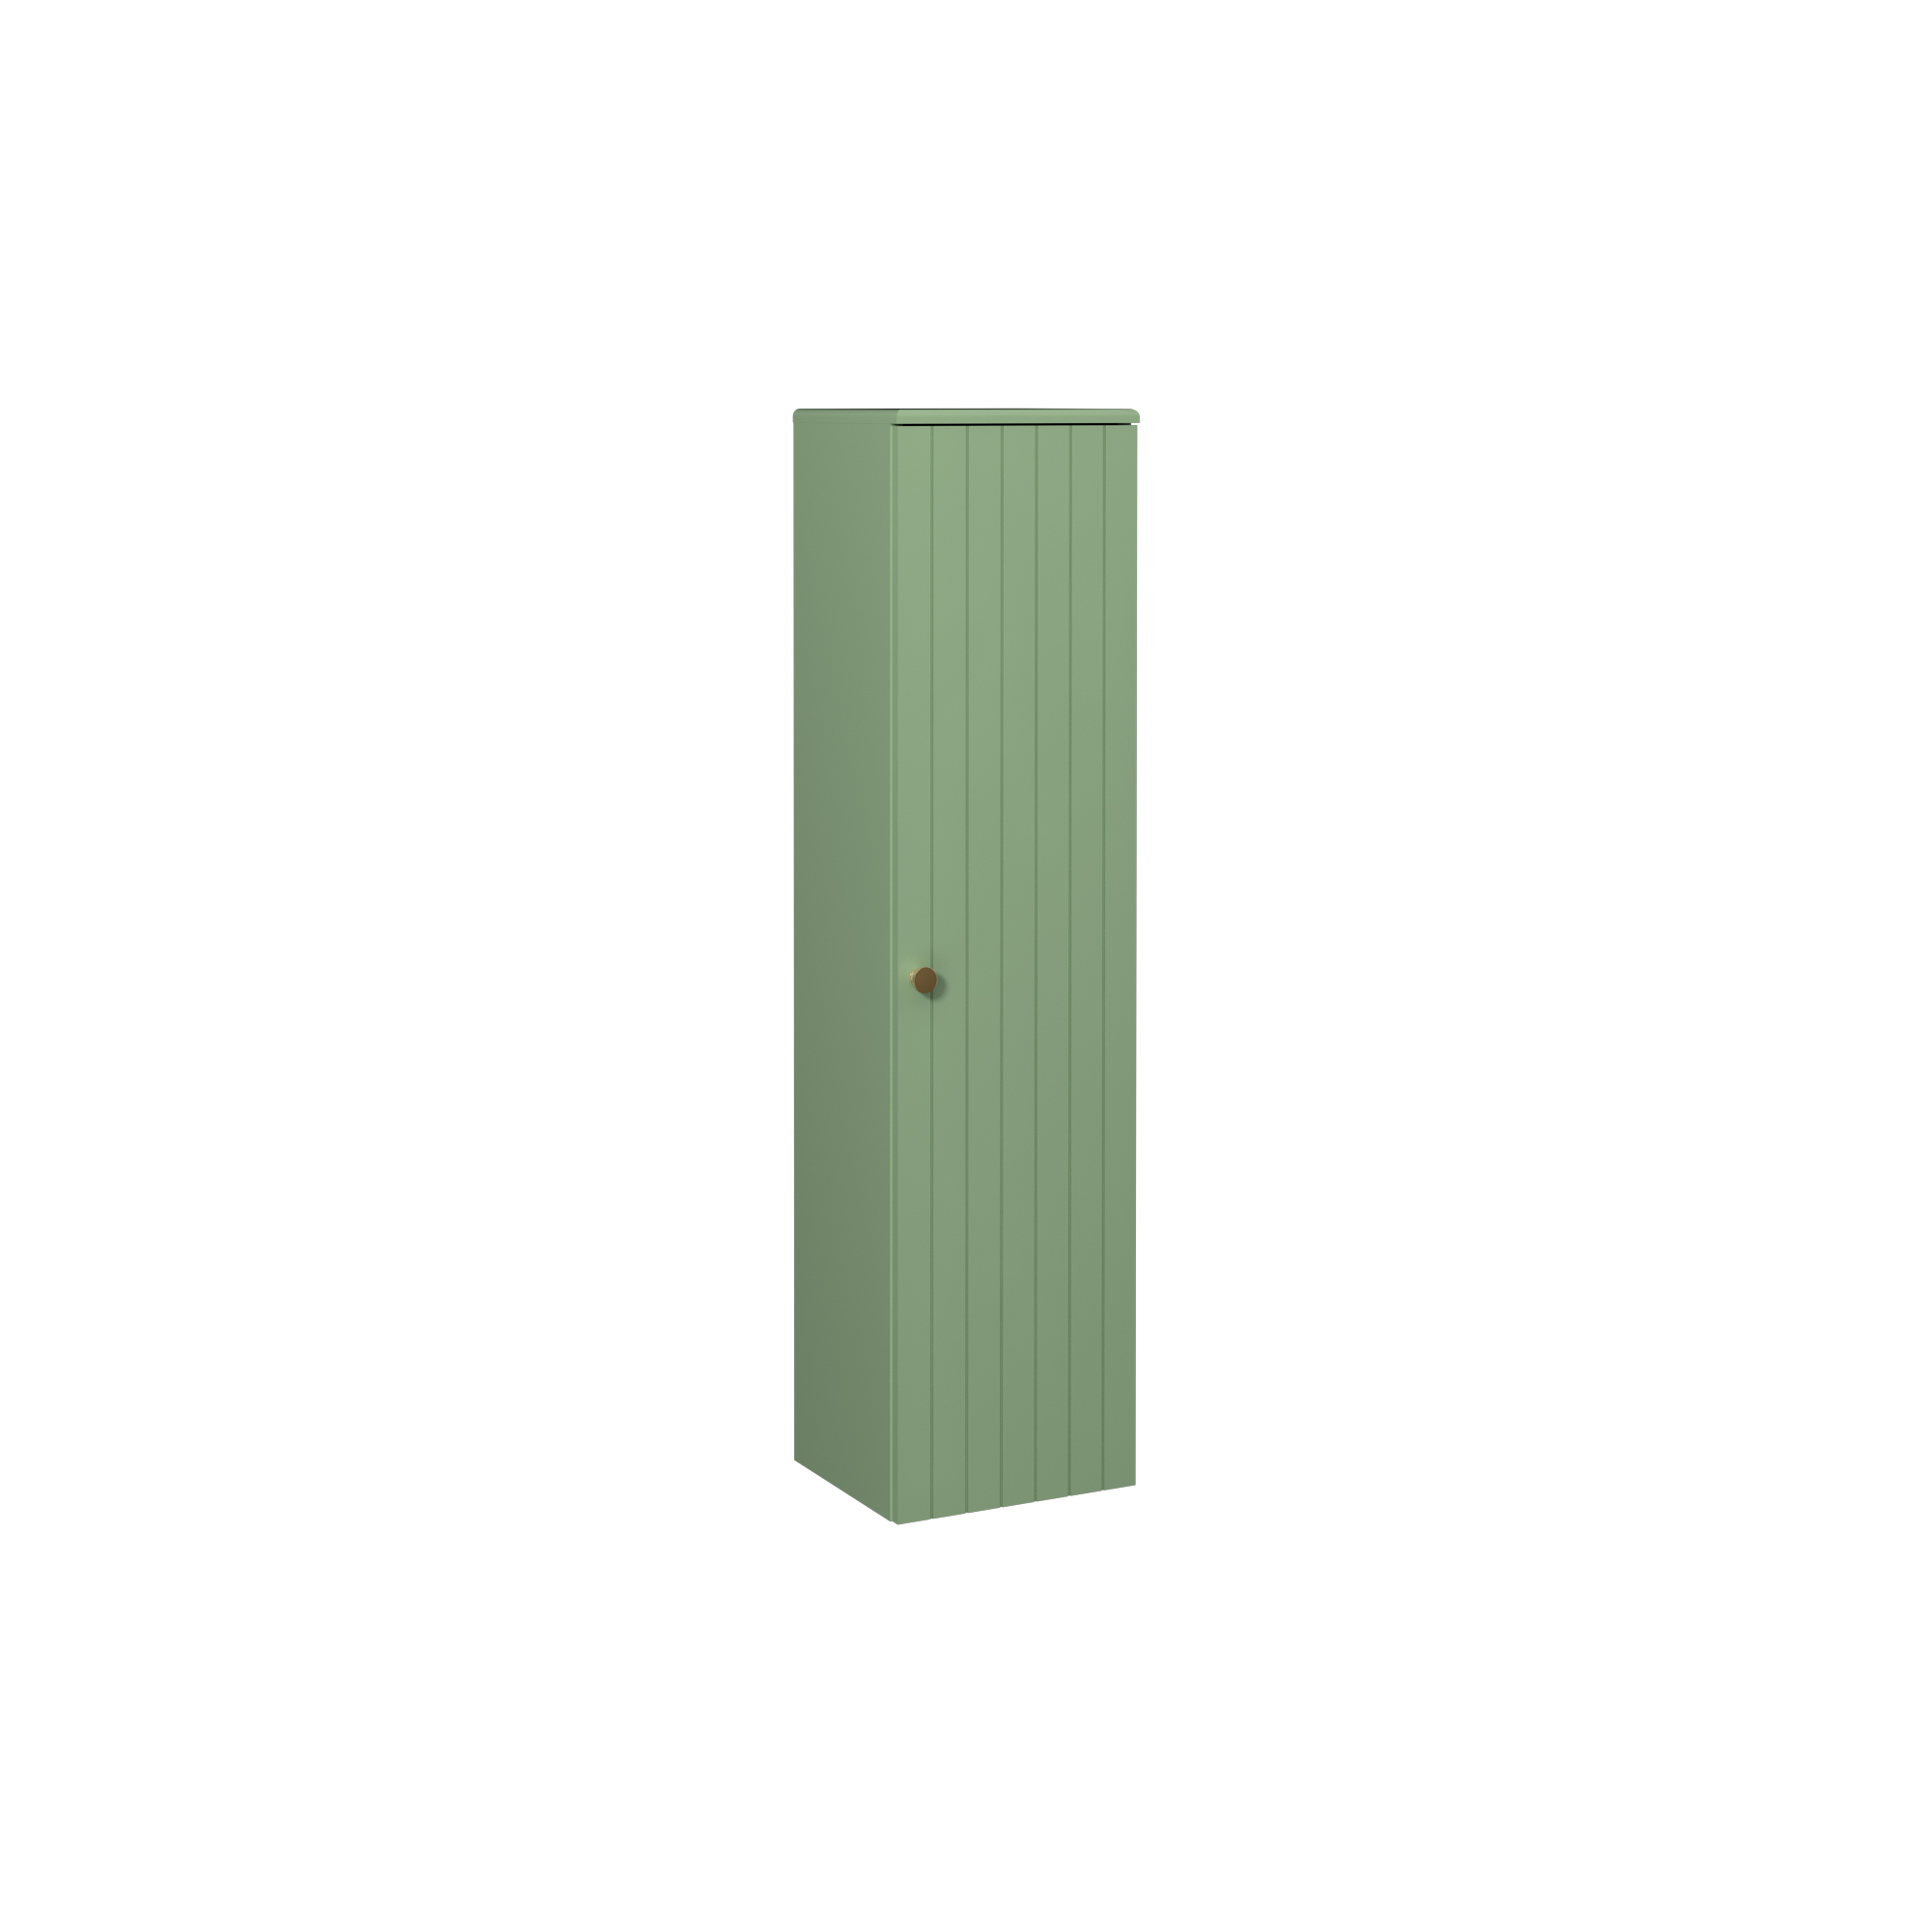 Rinato 35 cm Tall Cabinet, Pastel Green Right